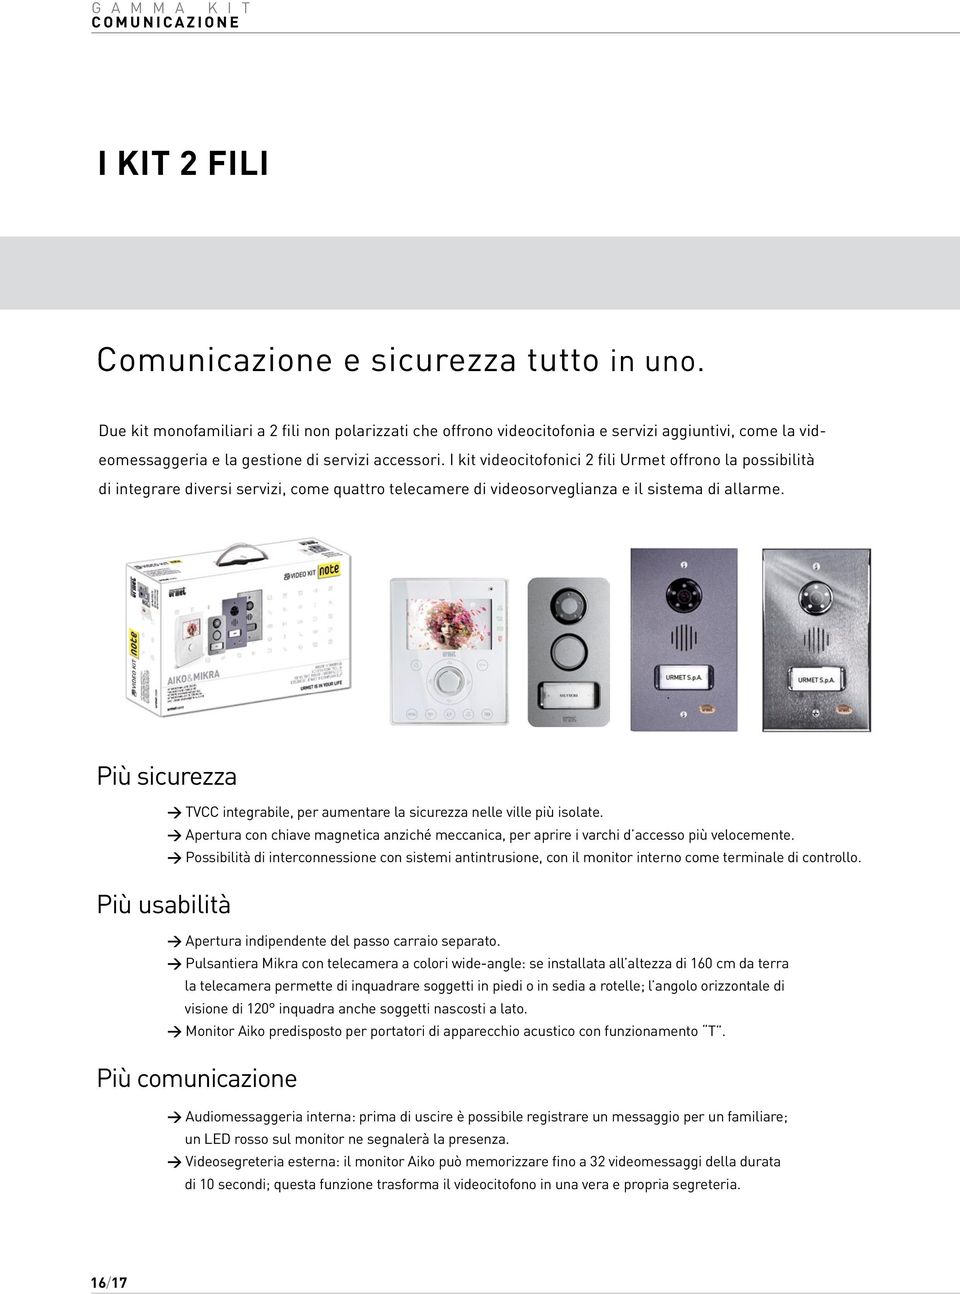 I kit videocitofonici 2 fili Urmet offrono la possibilità di integrare diversi servizi, come quattro telecamere di videosorveglianza e il sistema di allarme.